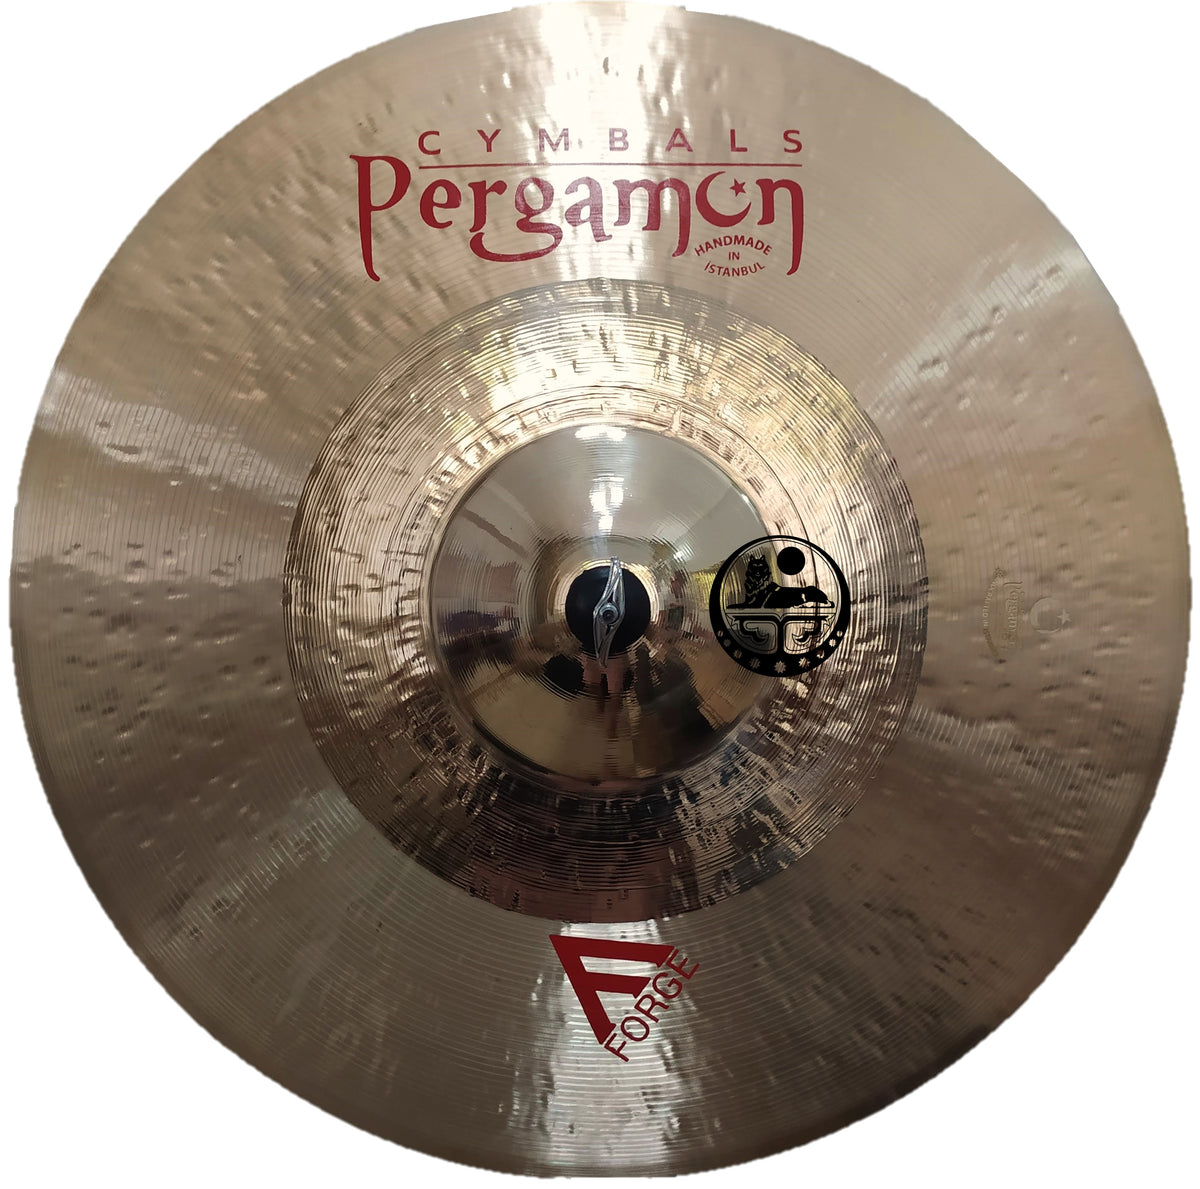 Pergamon Cymbals Forge Series – Sounds Anatolian